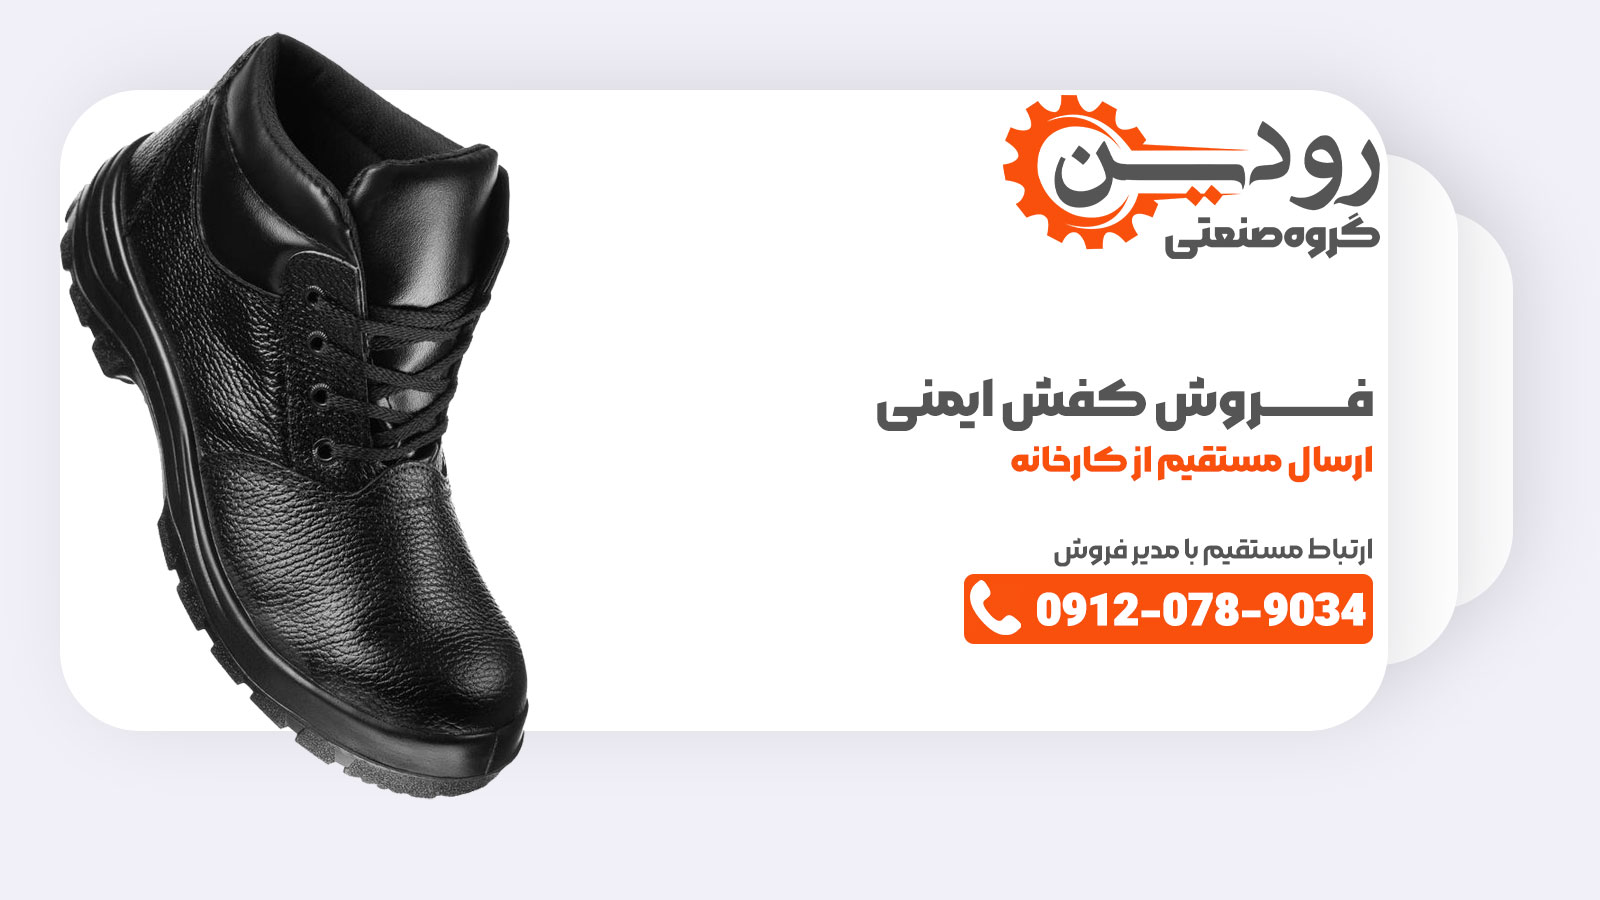 اگر به دنبال خرید اینترنتی از کارخانه تولید کفش ایمنی در خوزستان اهواز هستید به ما پیام دهید.